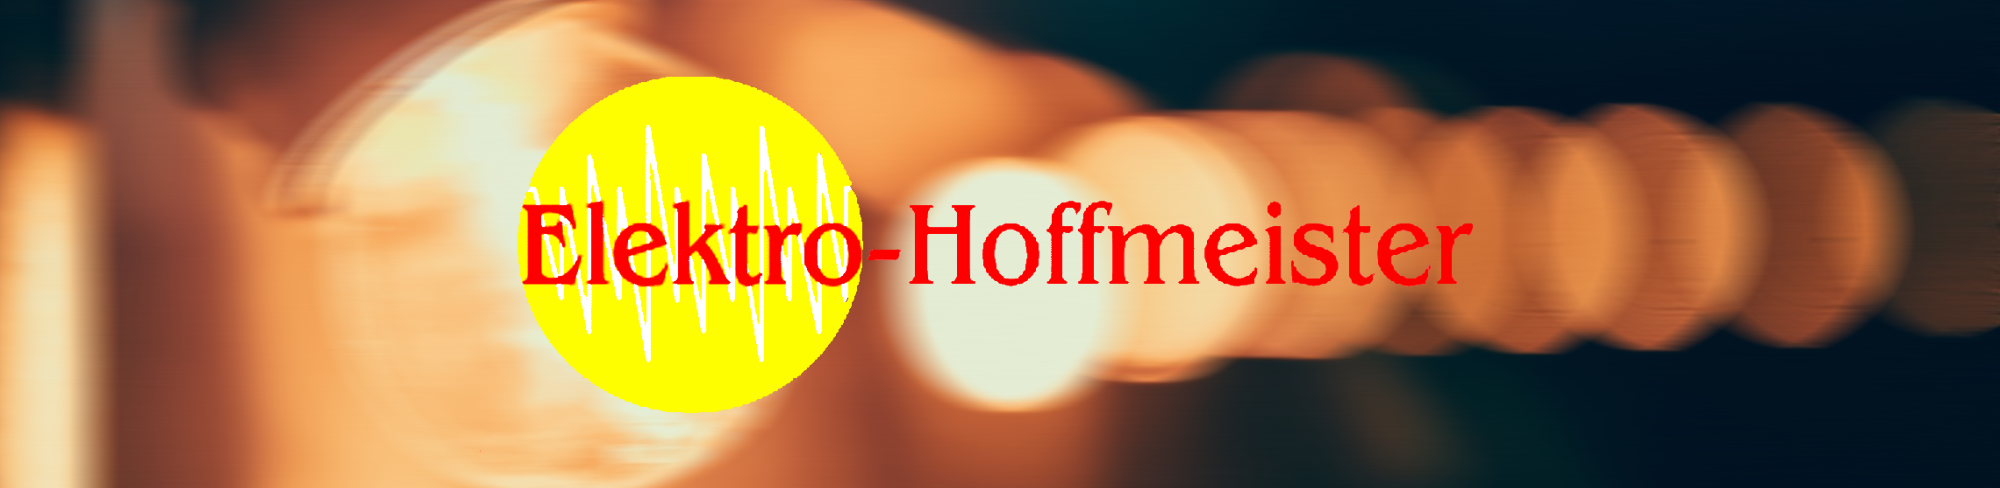 Elektro-Hoffmeister